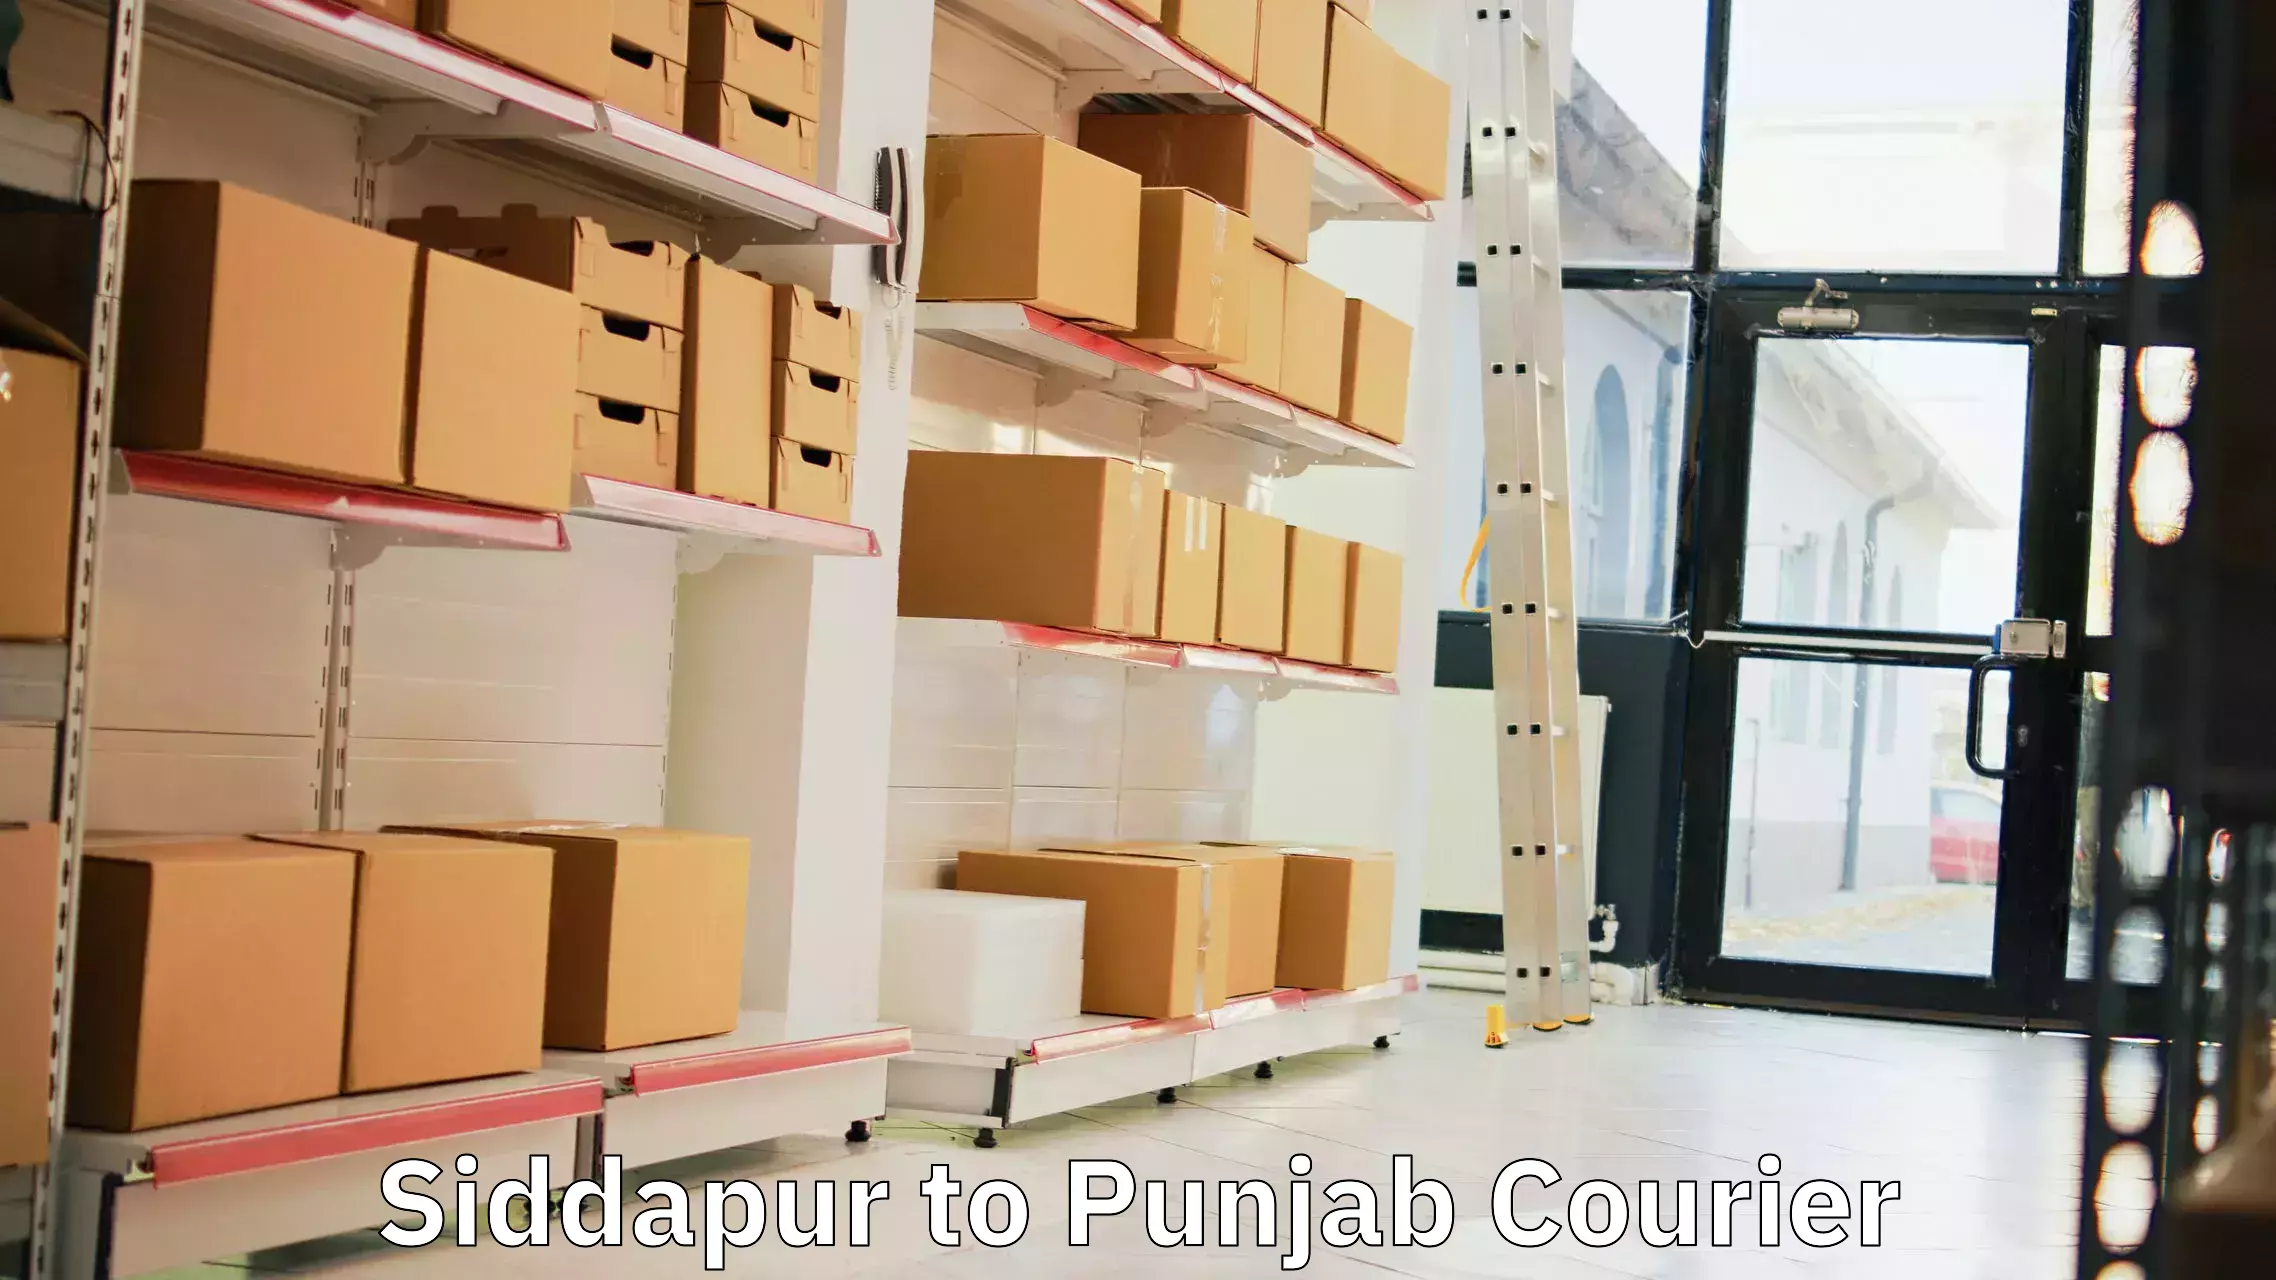 On-demand shipping options Siddapur to Punjab